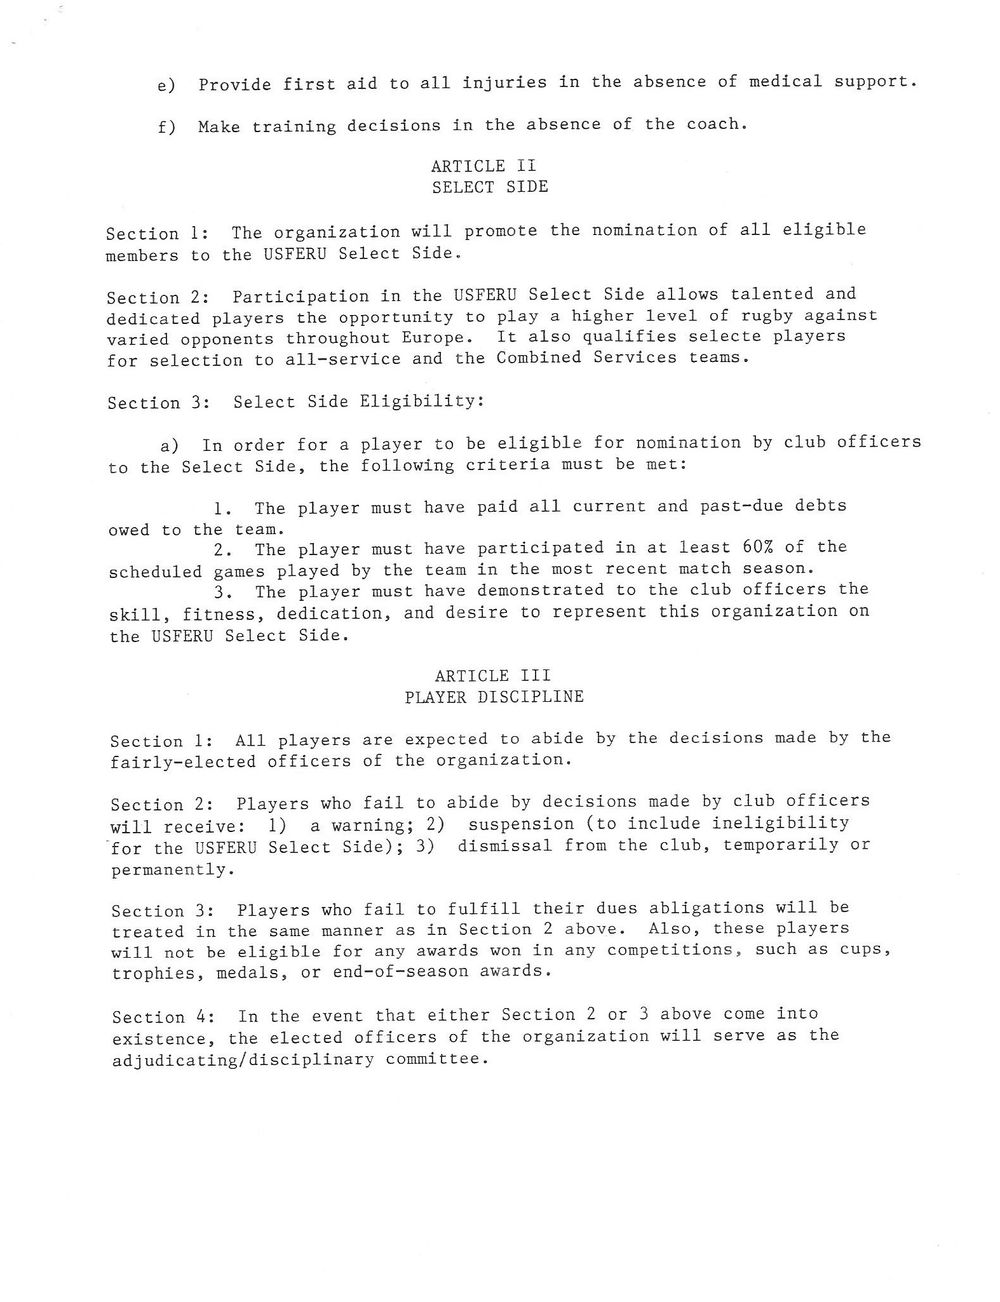 1989 Baumholder constitution 7.jpg